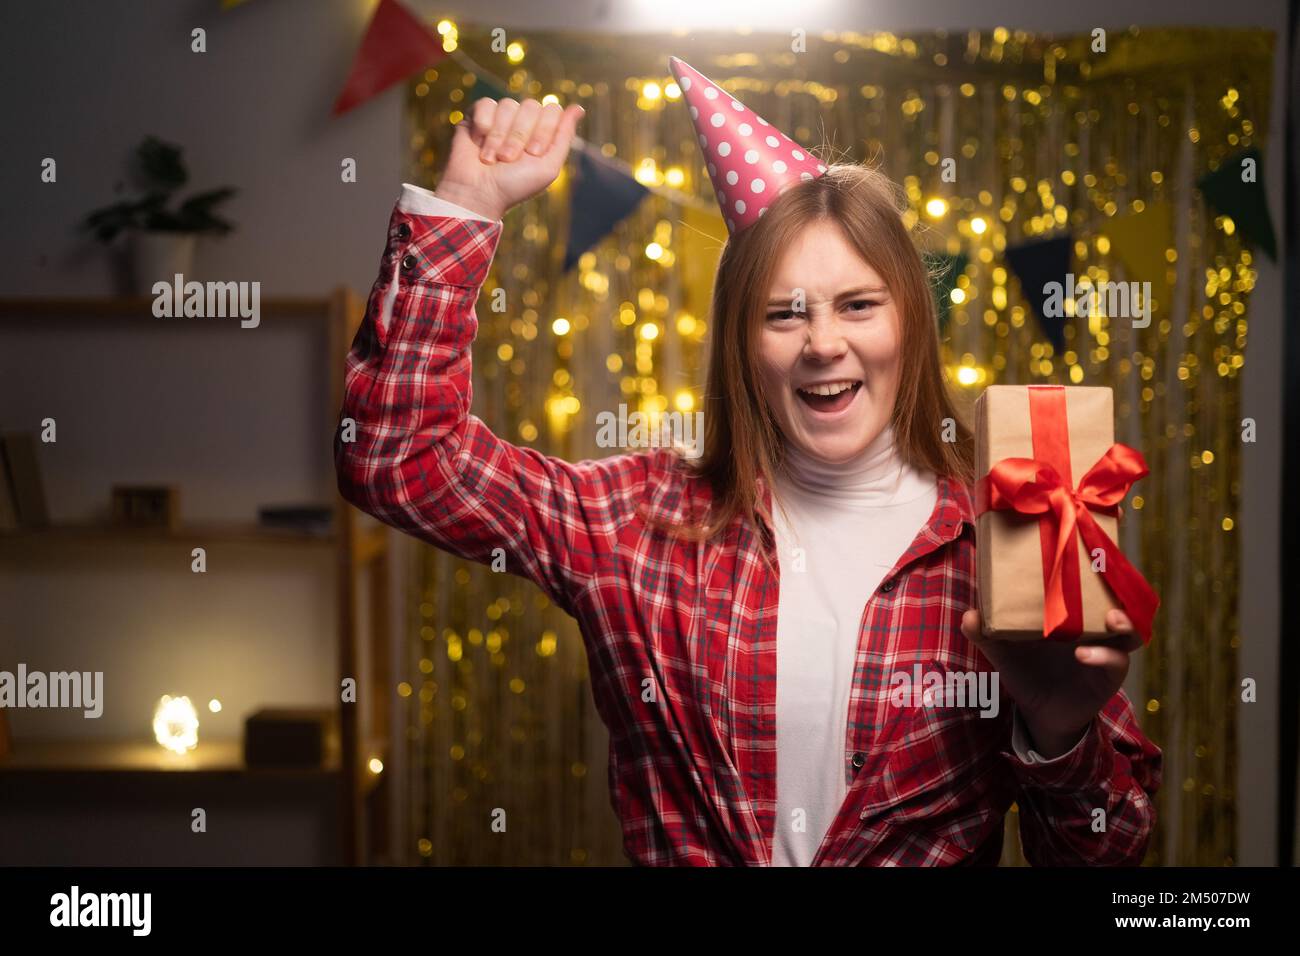 Eine ekstatische, emotionale junge Frau mit Hut und Hemd, die vor Aufregung schreit auf der Party, eine Geschenkbox in der Hand hält, die Faust zusammendrückt, die Geburt feiert Stockfoto